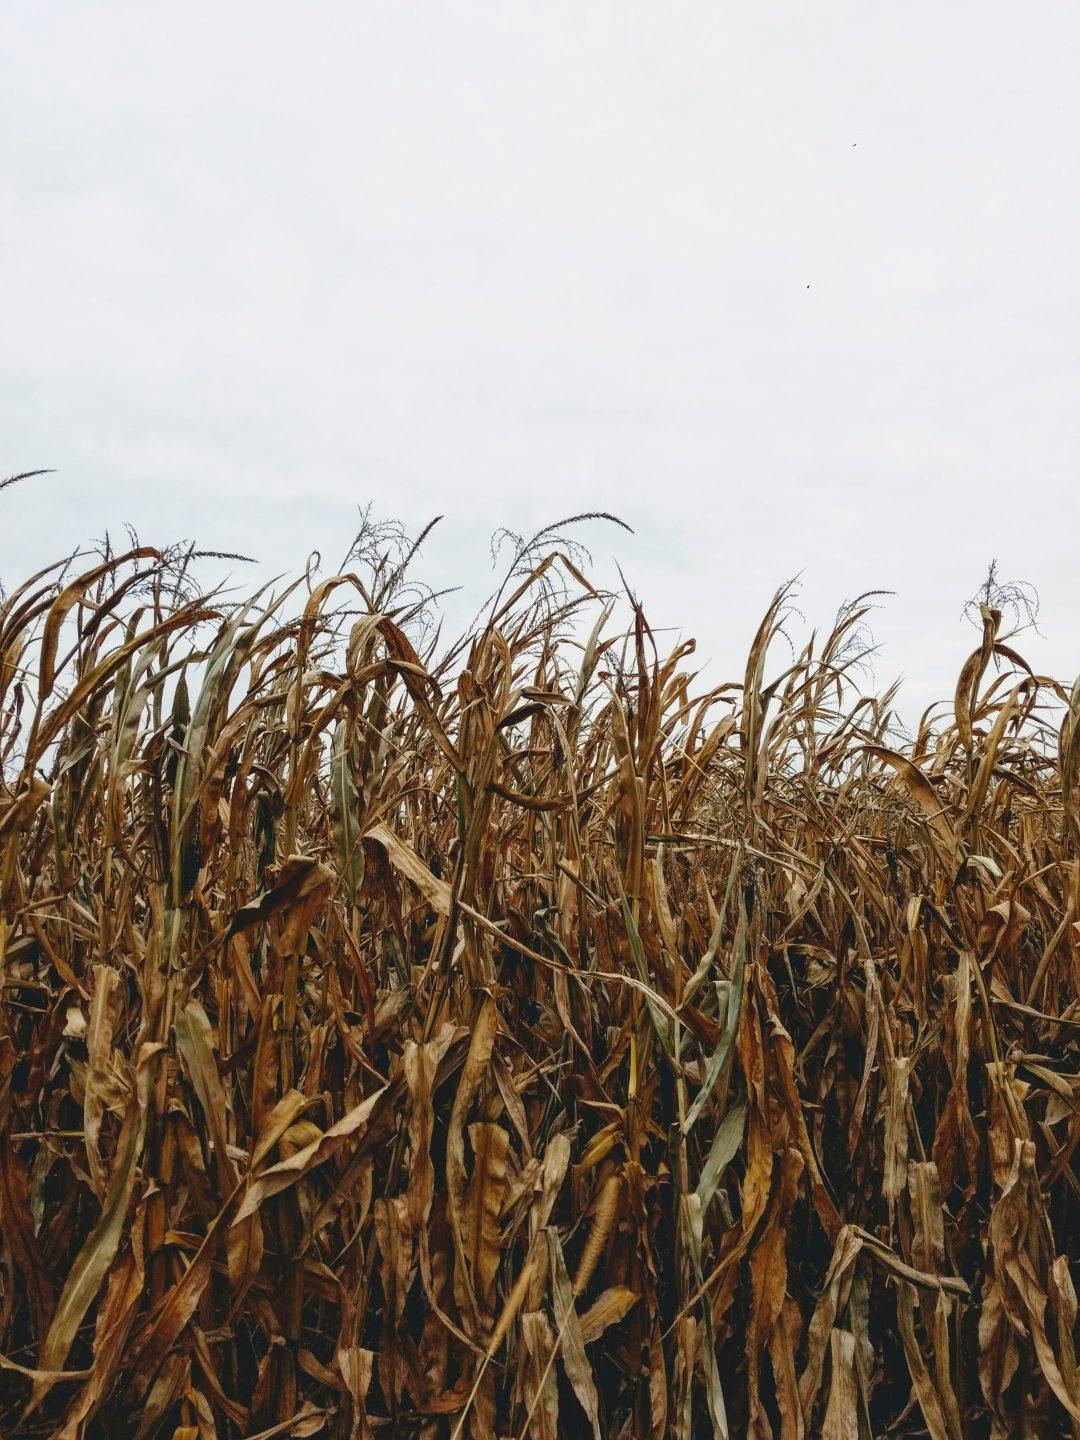 A corn field in Evansville